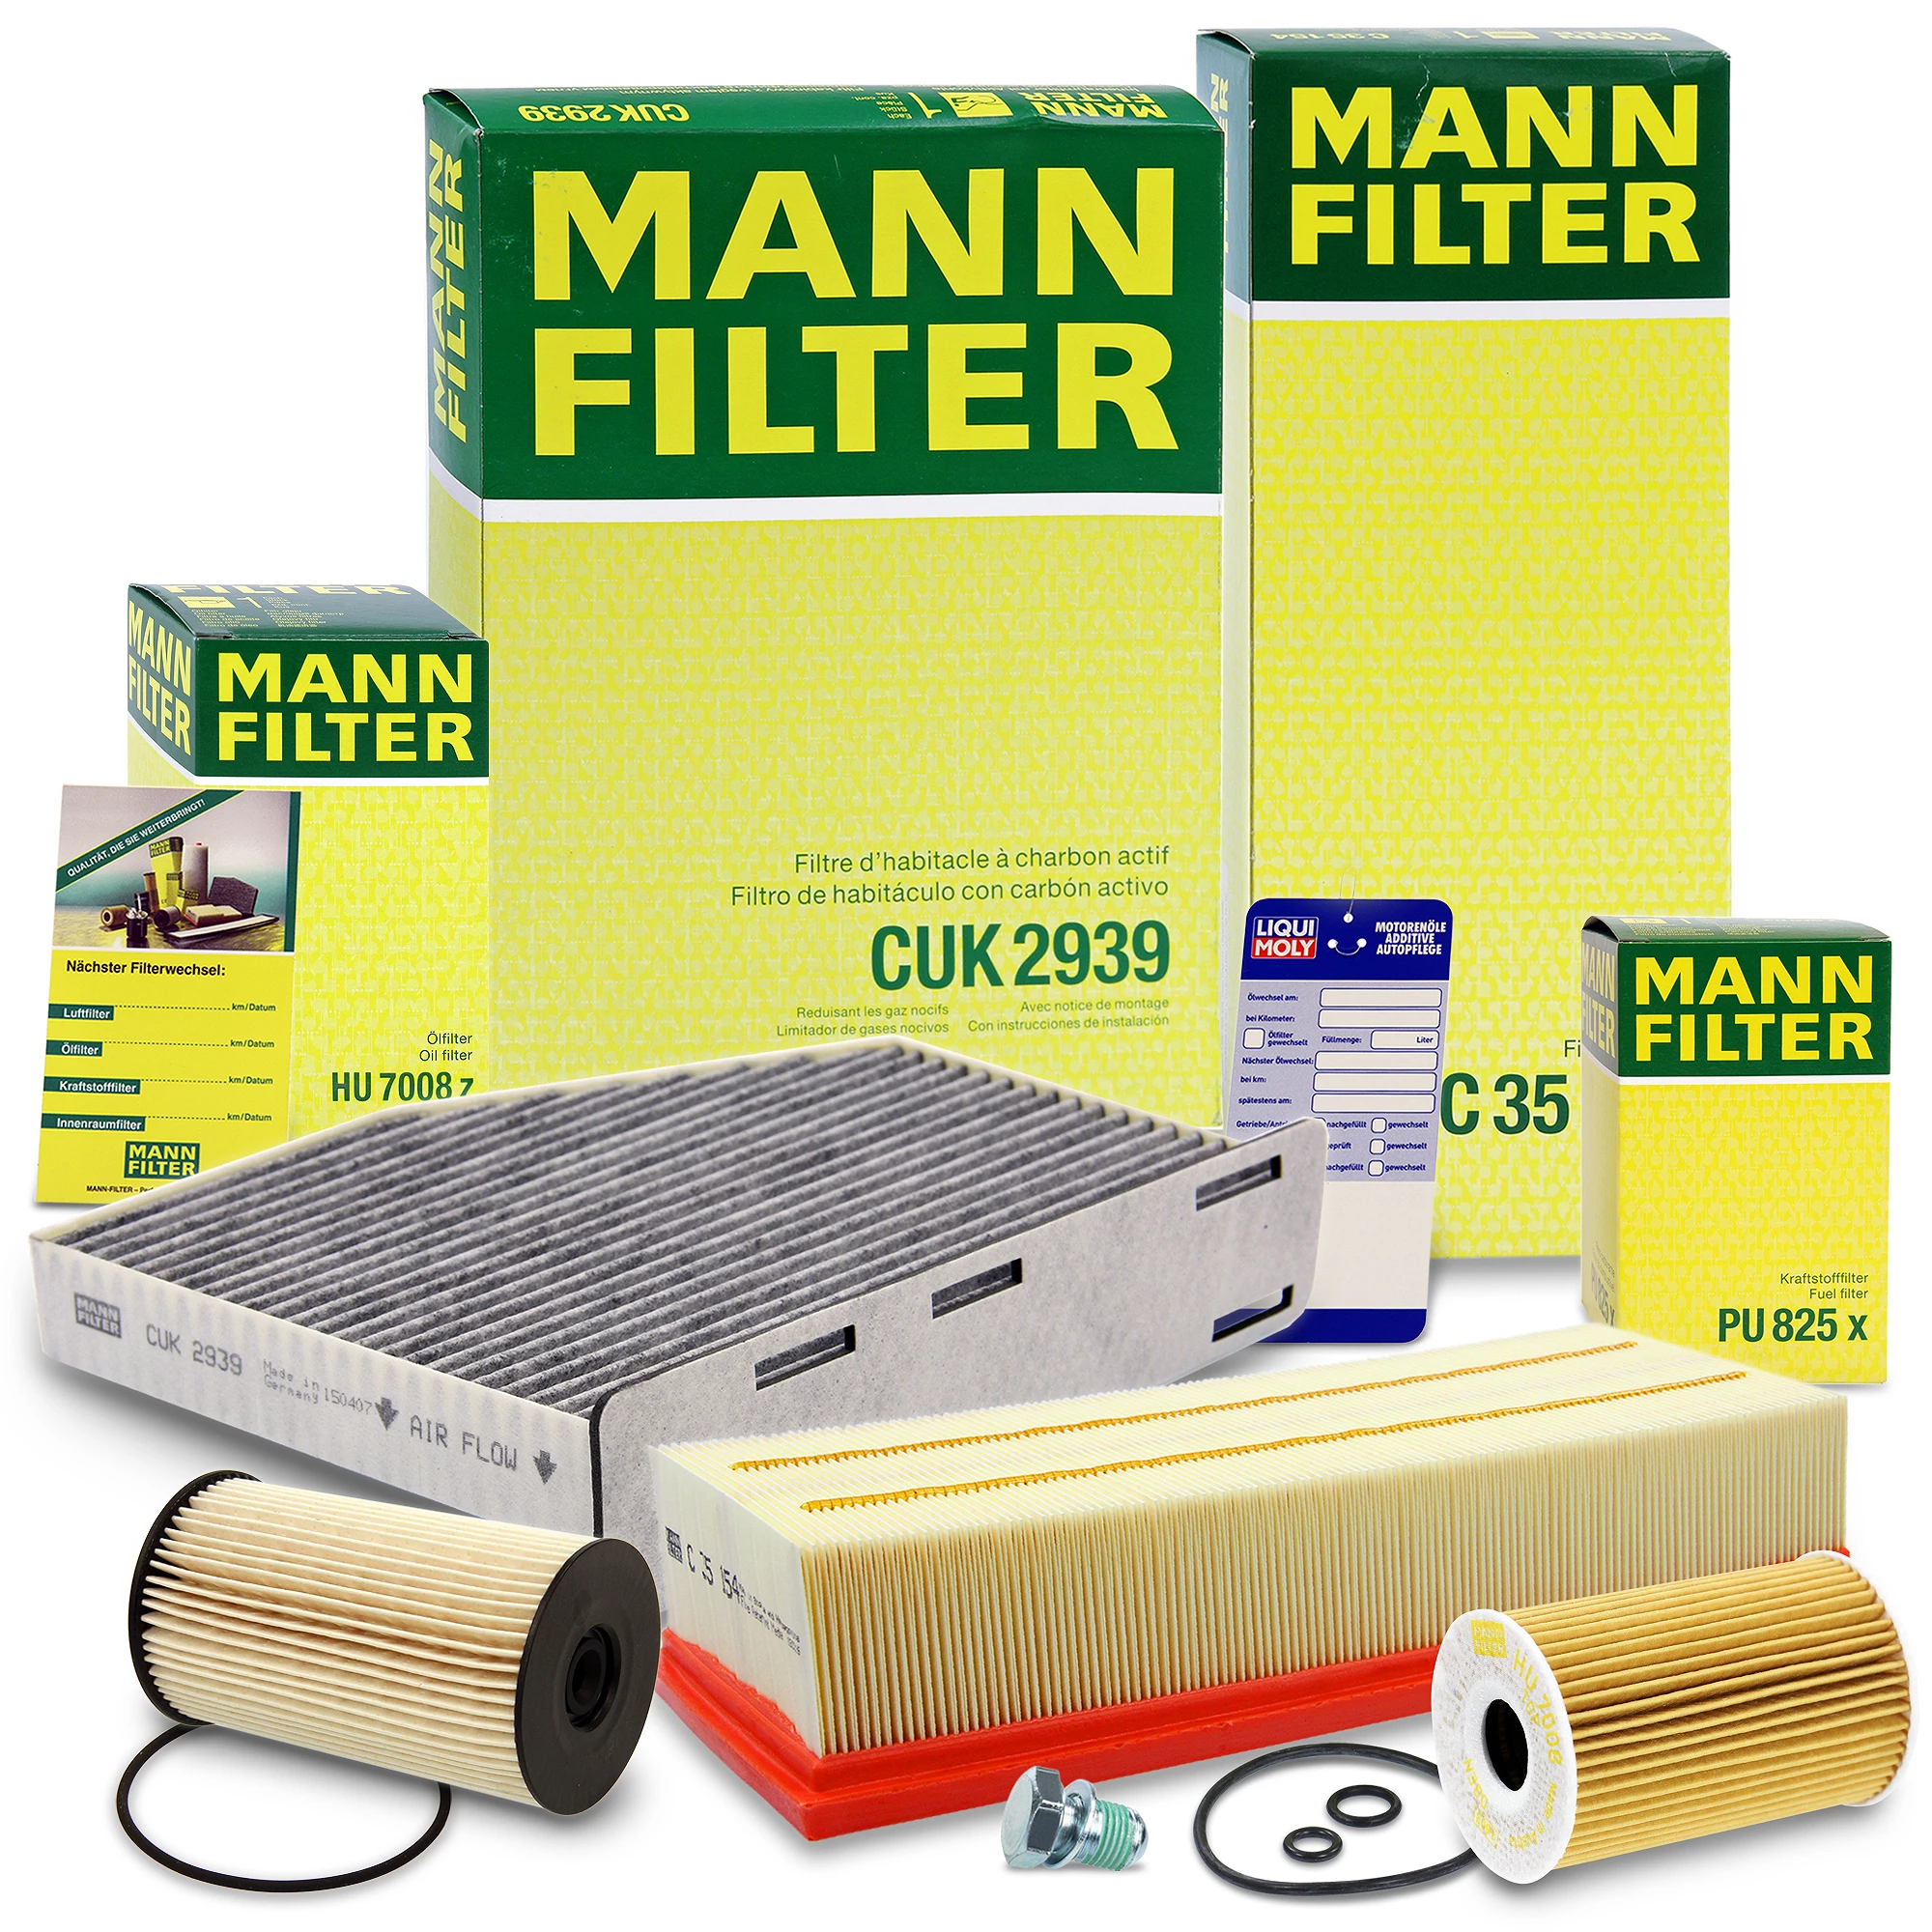 MANN-FILTER Inspektions Set Inspektionspaket Luftfilter Ölfilter Innenraumfilter Kraftstofffilter